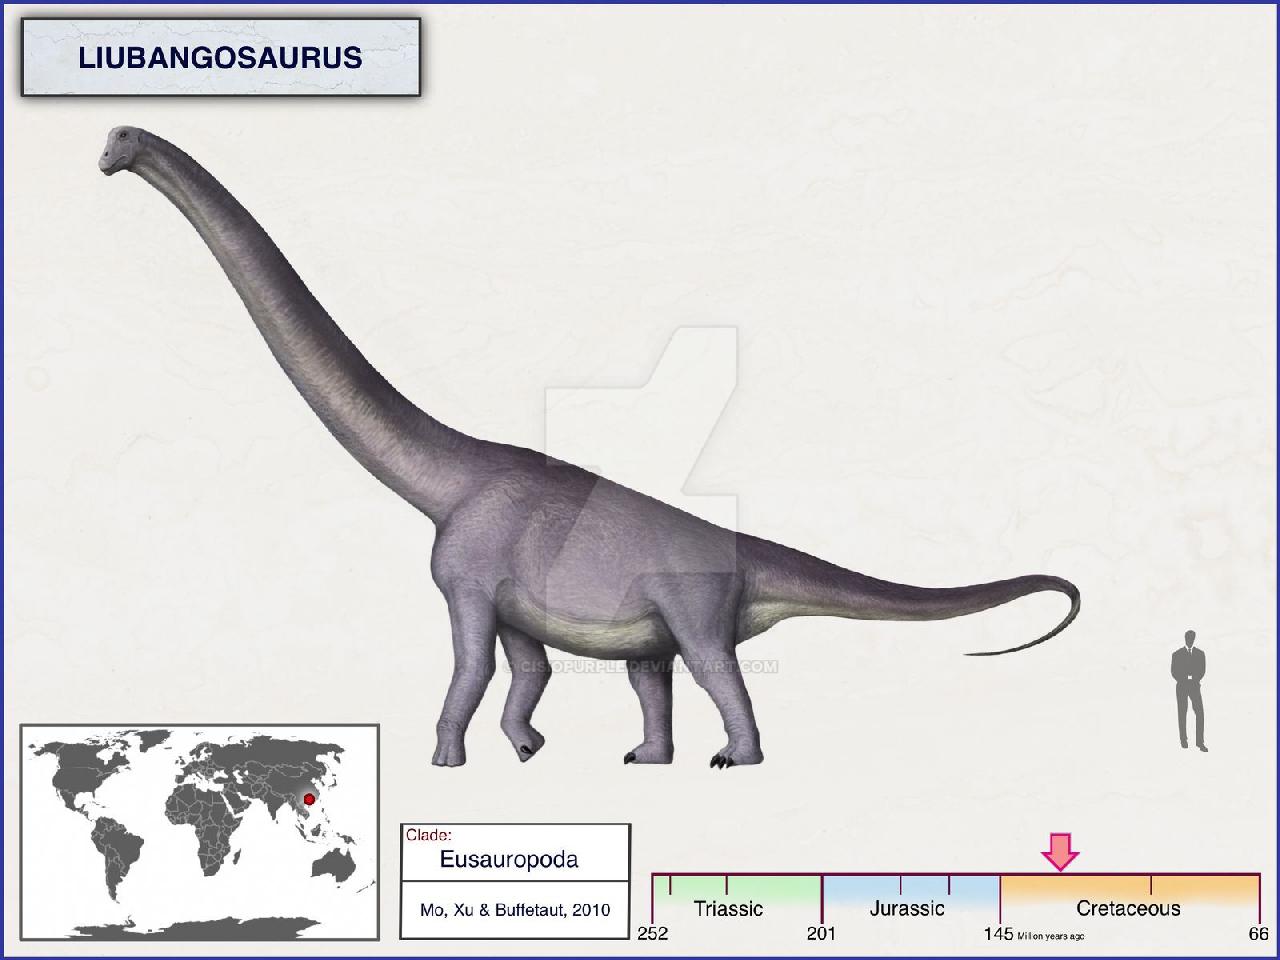 Liubangosaurus, Cretaceous
(Меловой период)